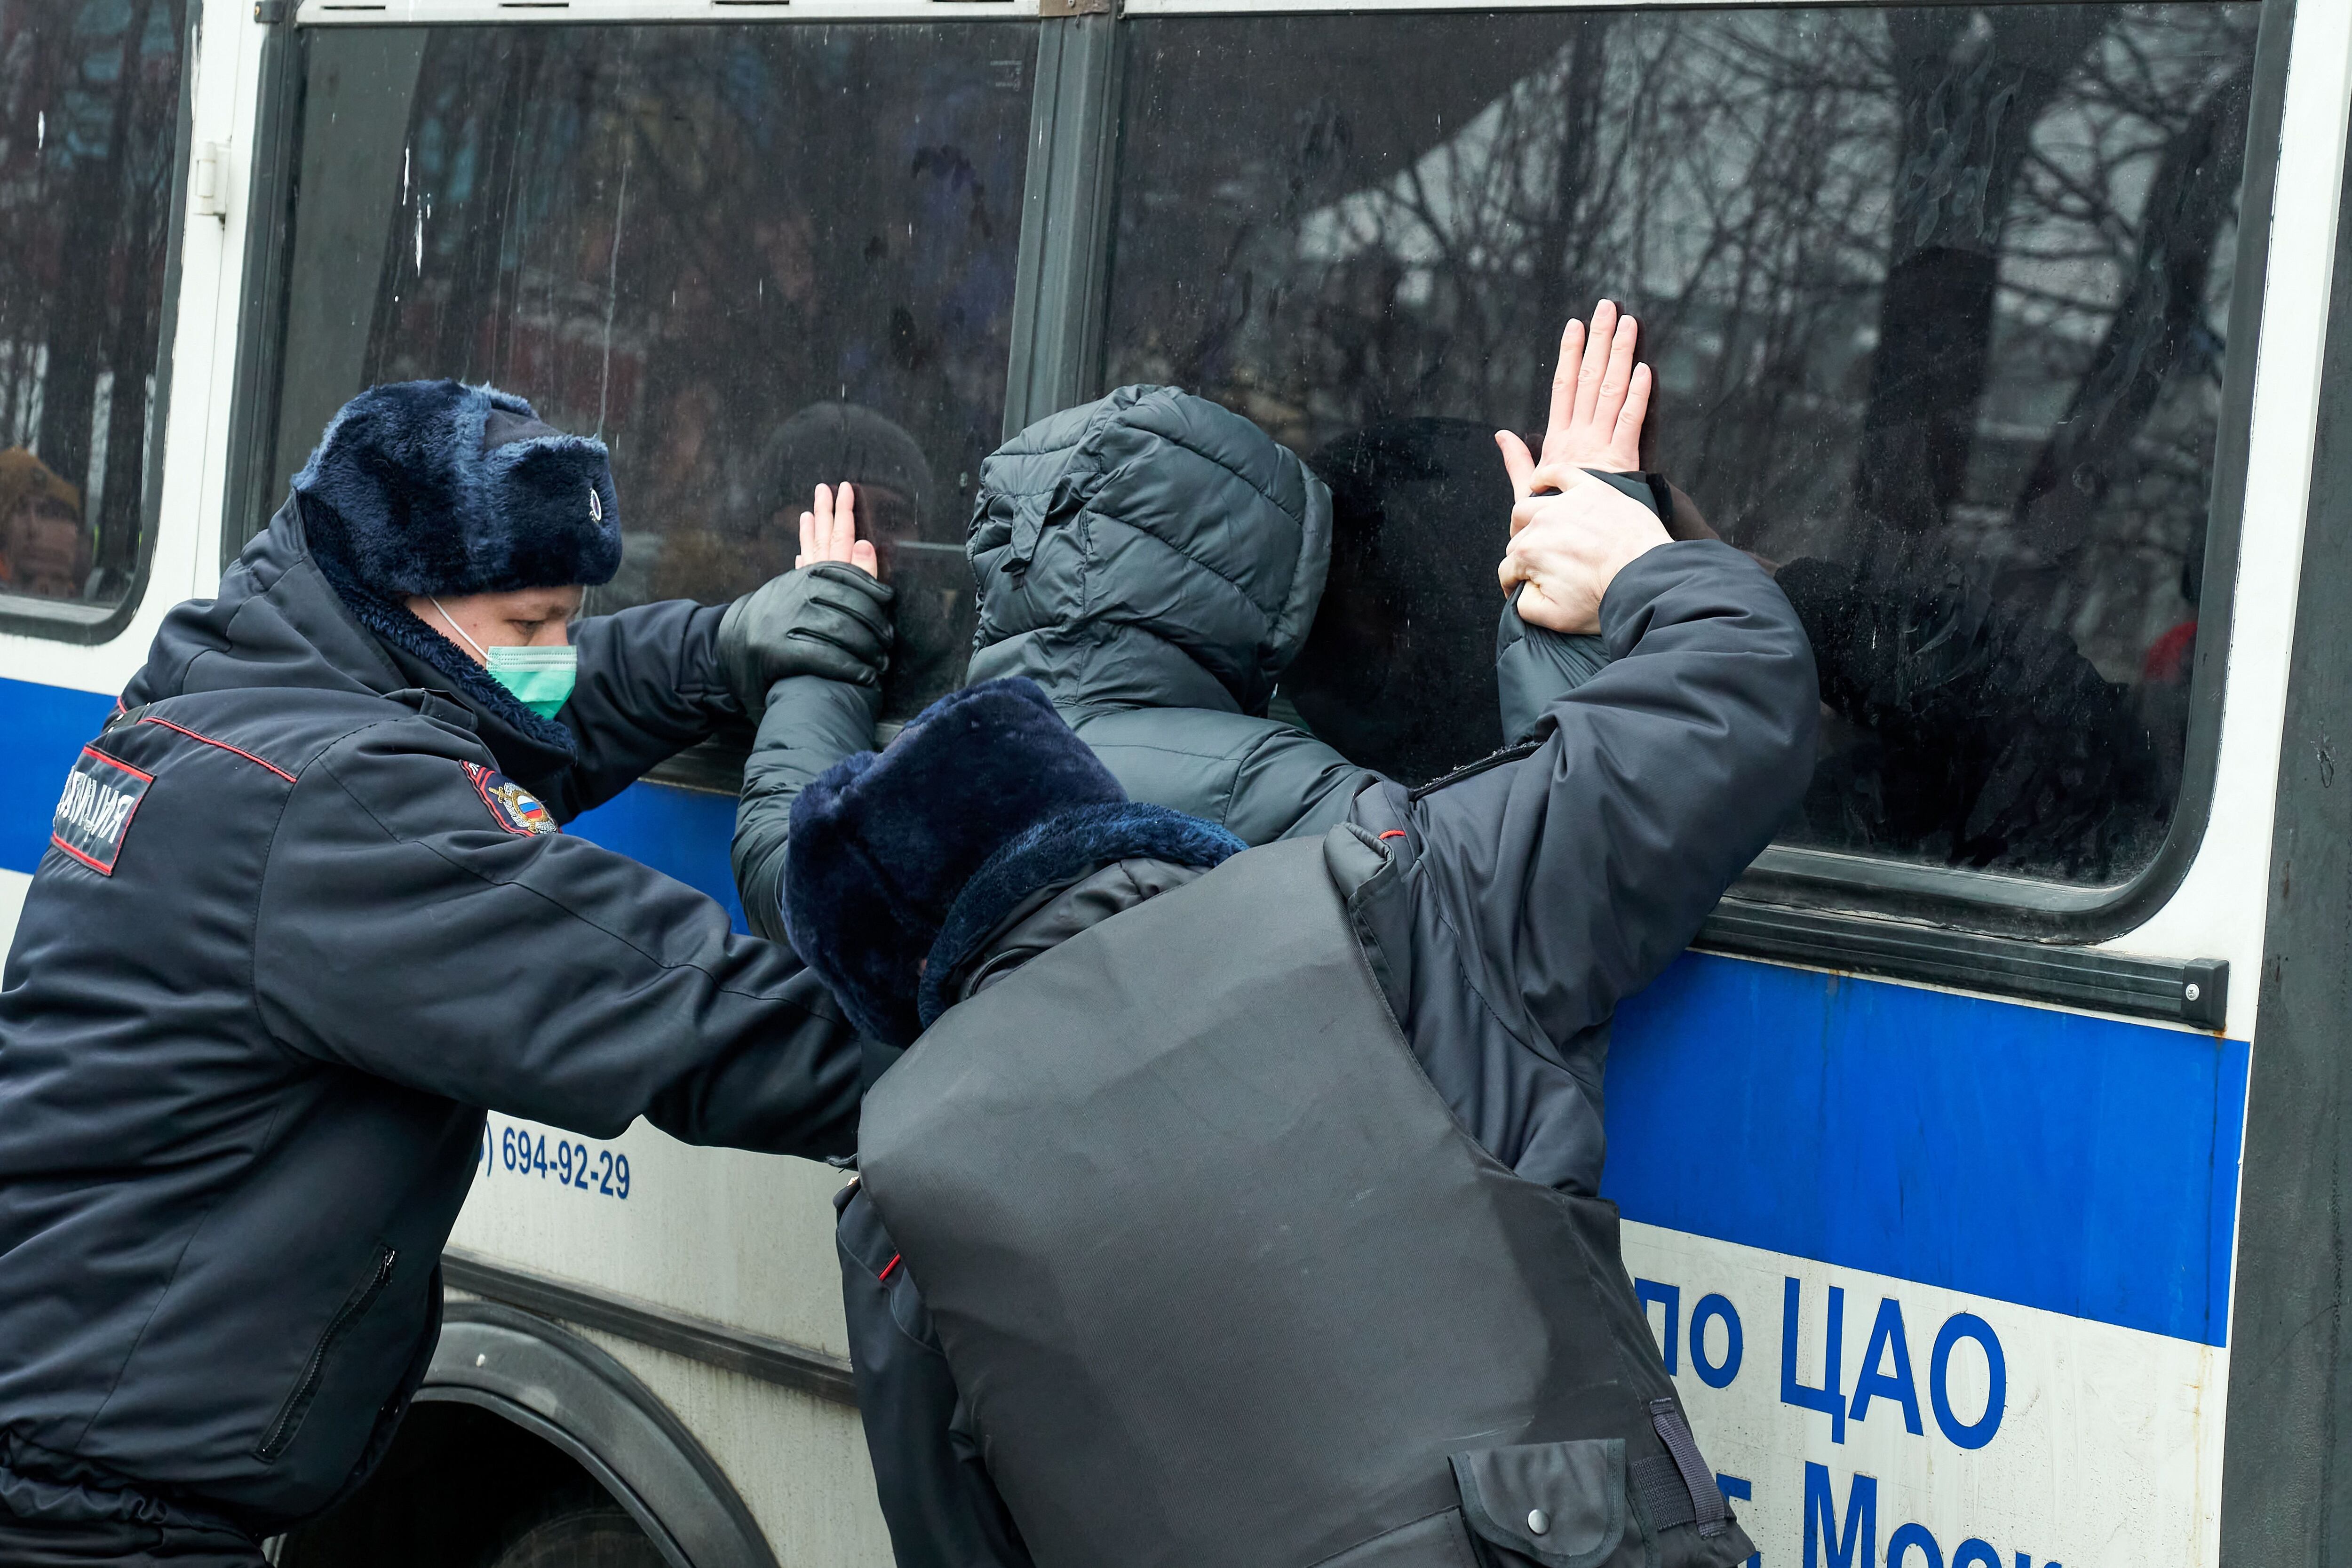 23/01/2021 Detención durante la protesta de apoyo a Alexei Navalni en Moscú
POLITICA EUROPA INTERNACIONAL RUSIA
MIHAIL TOKMAKOV / ZUMA PRESS / CONTACTOPHOTO
